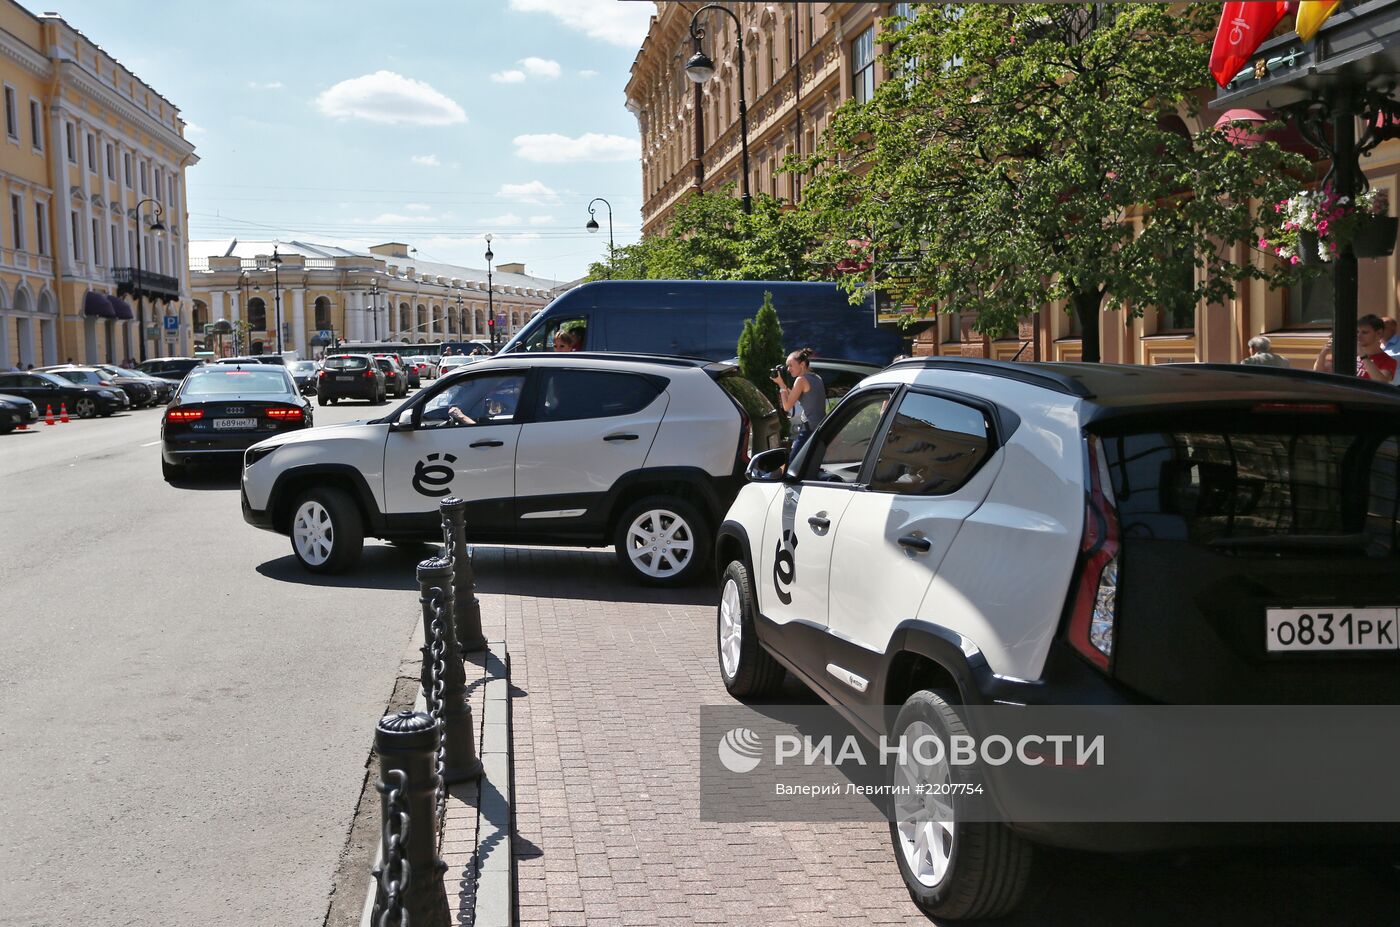 М.Прохоров показал Ё-мобиль во время ПМЭФ в Санкт-Петербурге